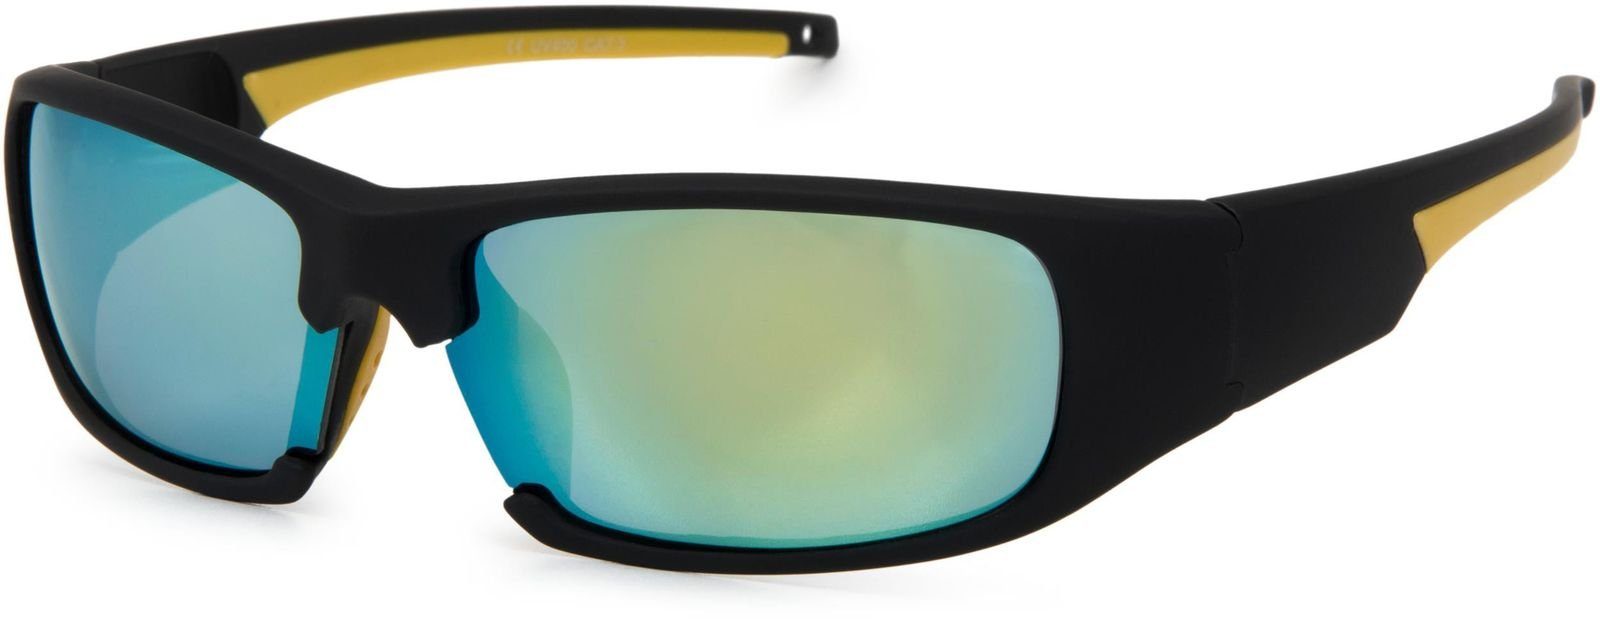 Sonnenbrille Polarisiert Verspiegelt Radbrille Bikerbrille Sportbrille Neu. 